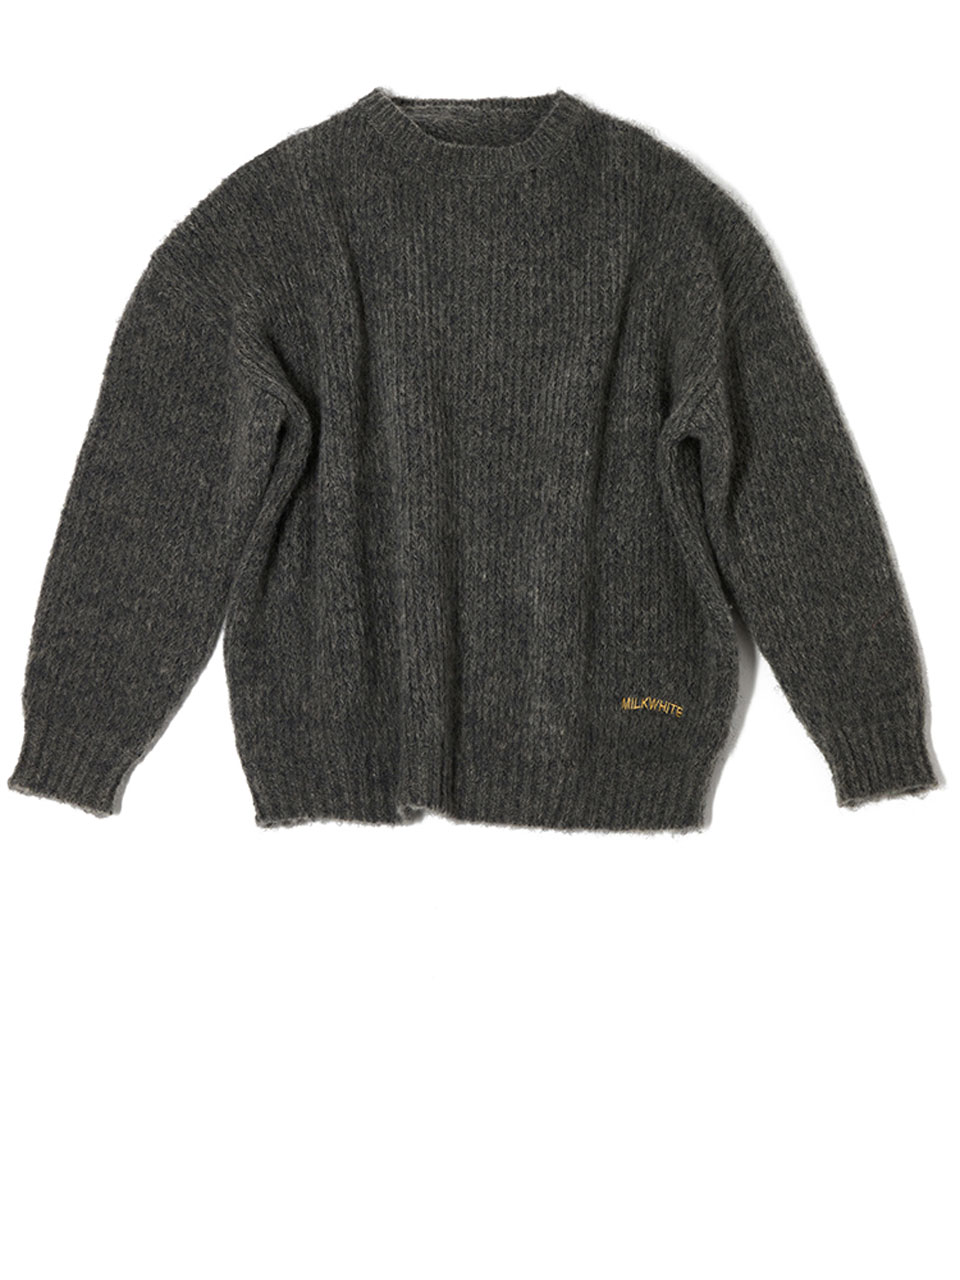 Mikwhite Grey Sweater